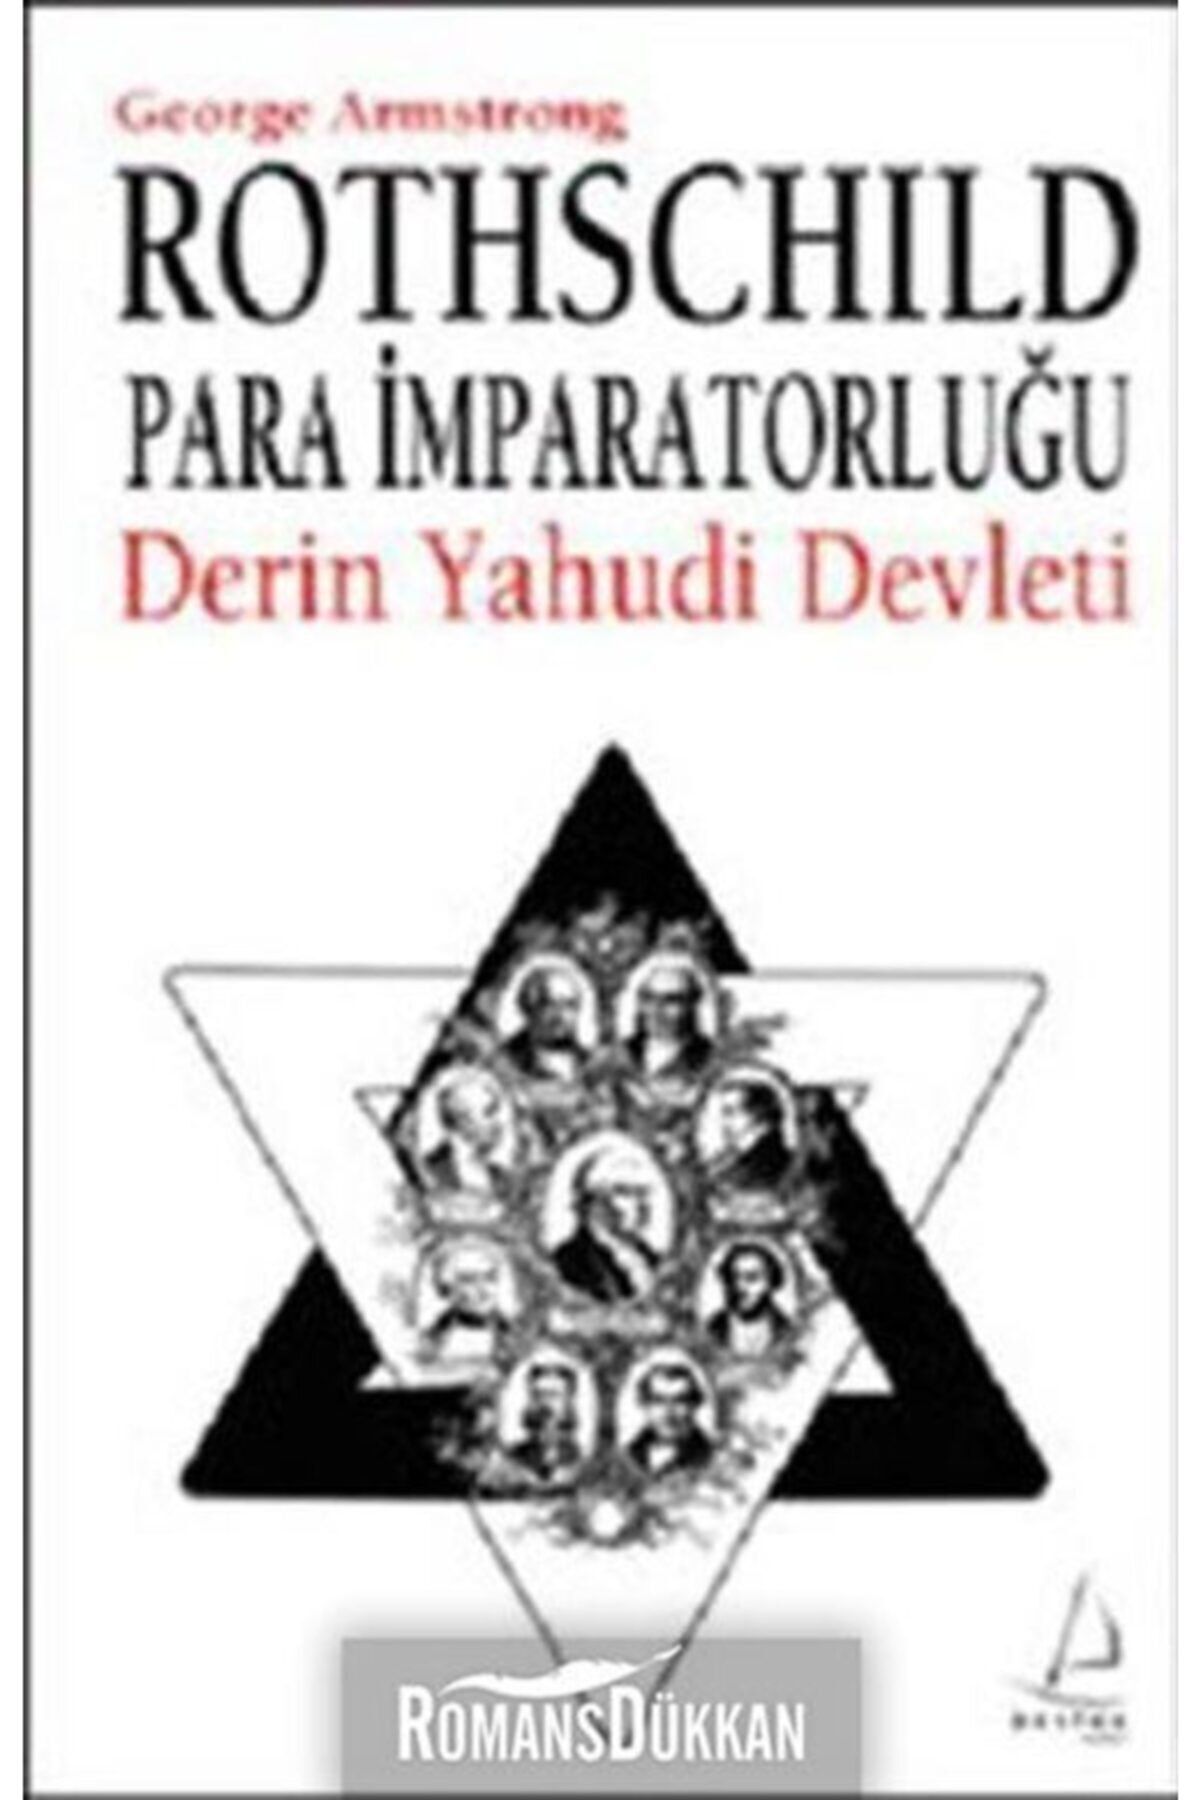 Destek Yayınları Rothschild Para Imparatorluğu & Derin Yahudi Devleti